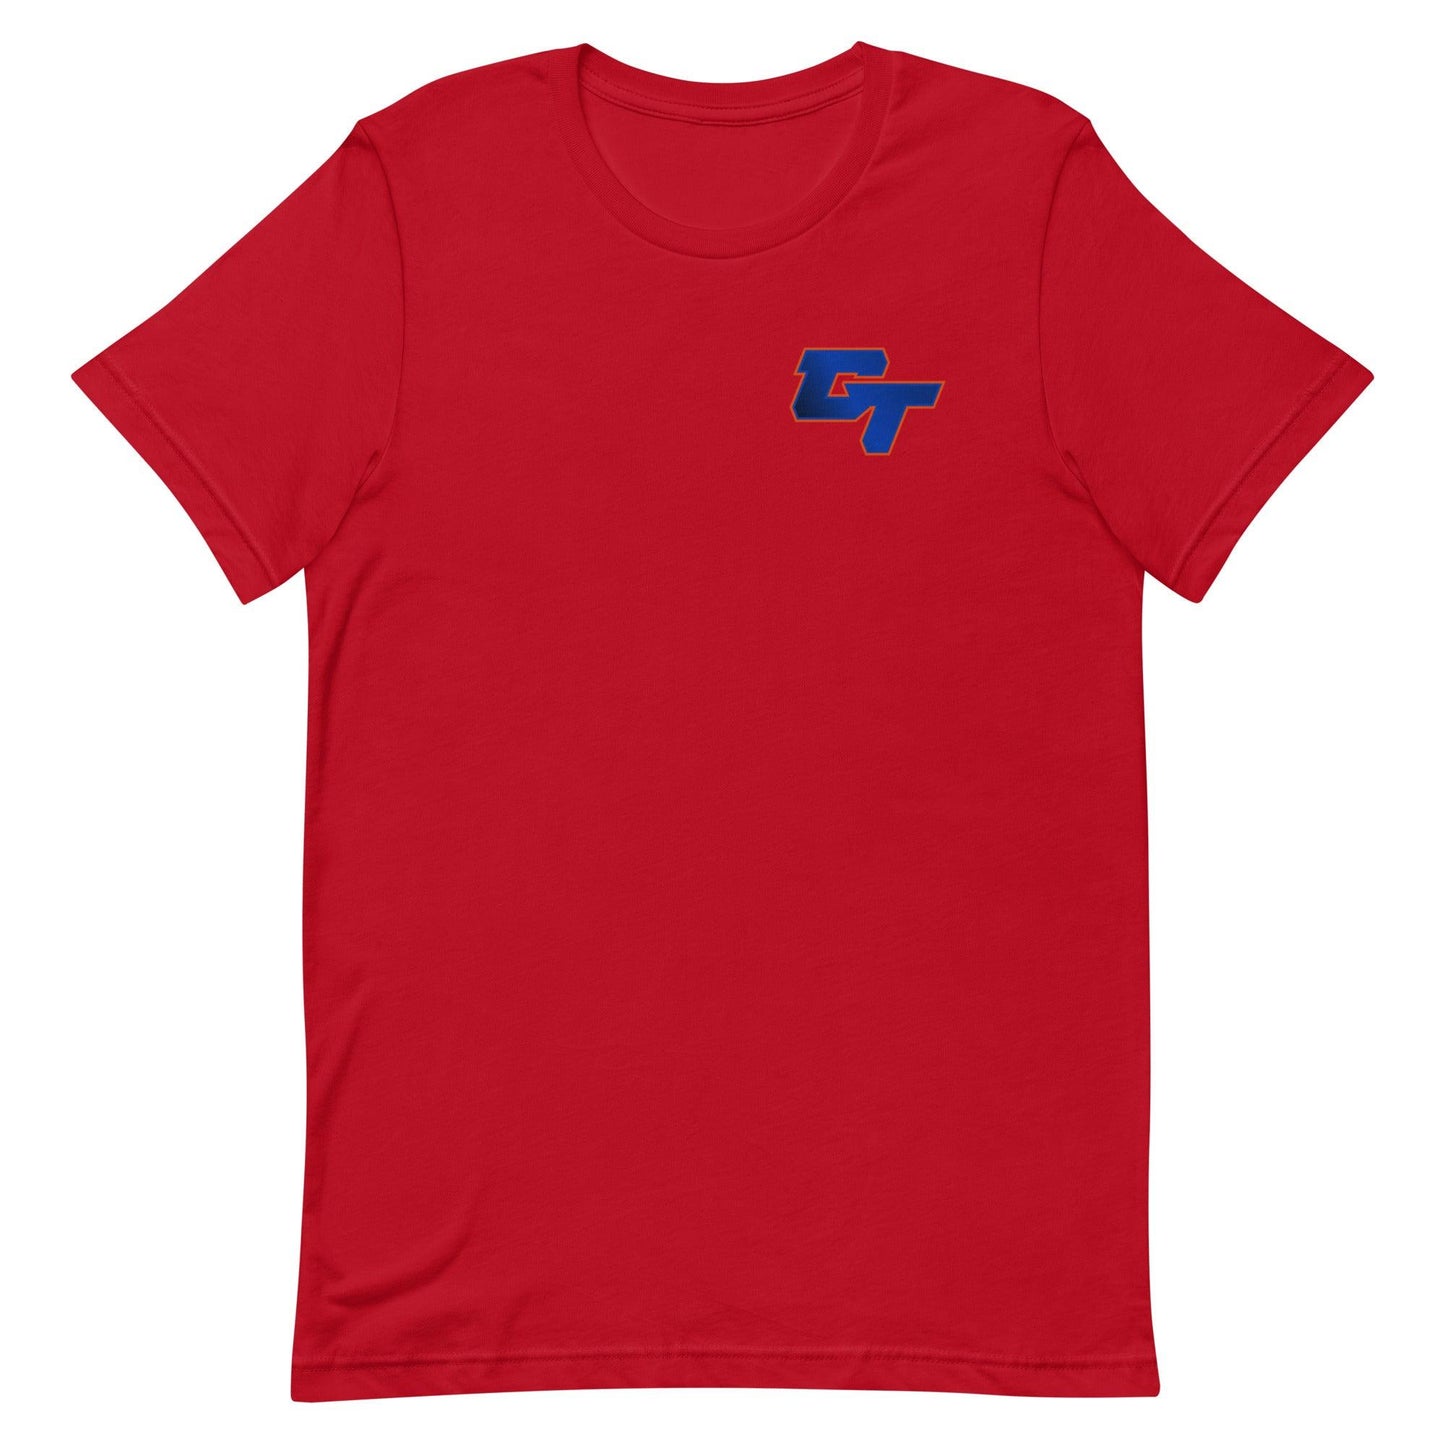 George Tarlas "GT" t-shirt - Fan Arch